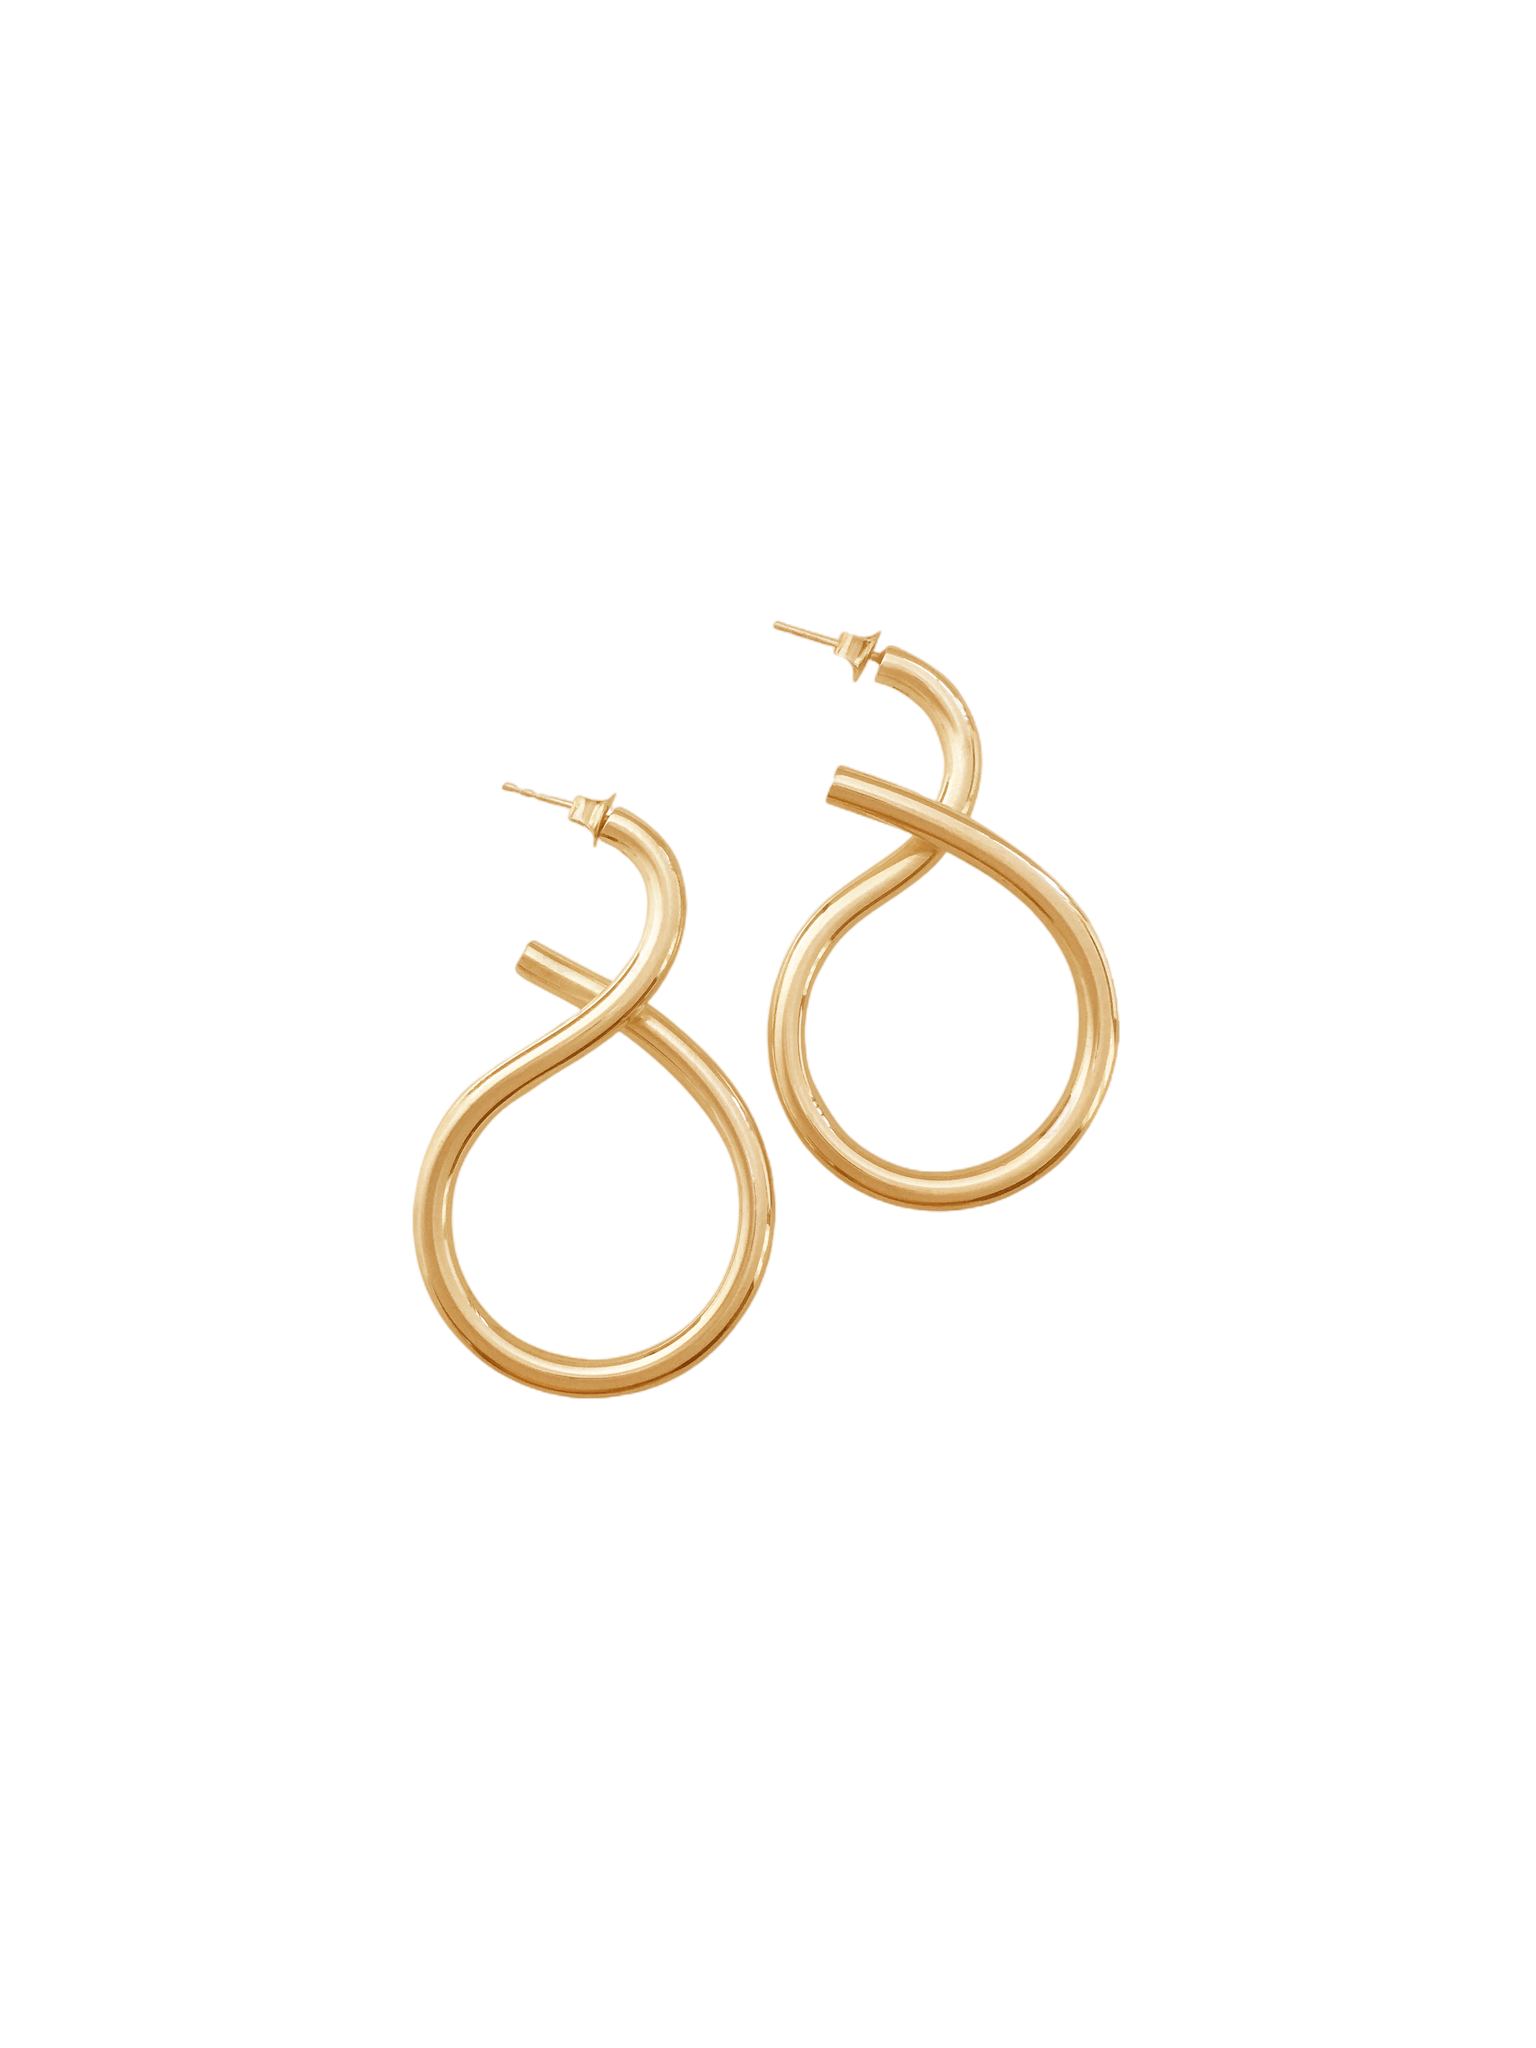 Shape II earrings in gold vermeil